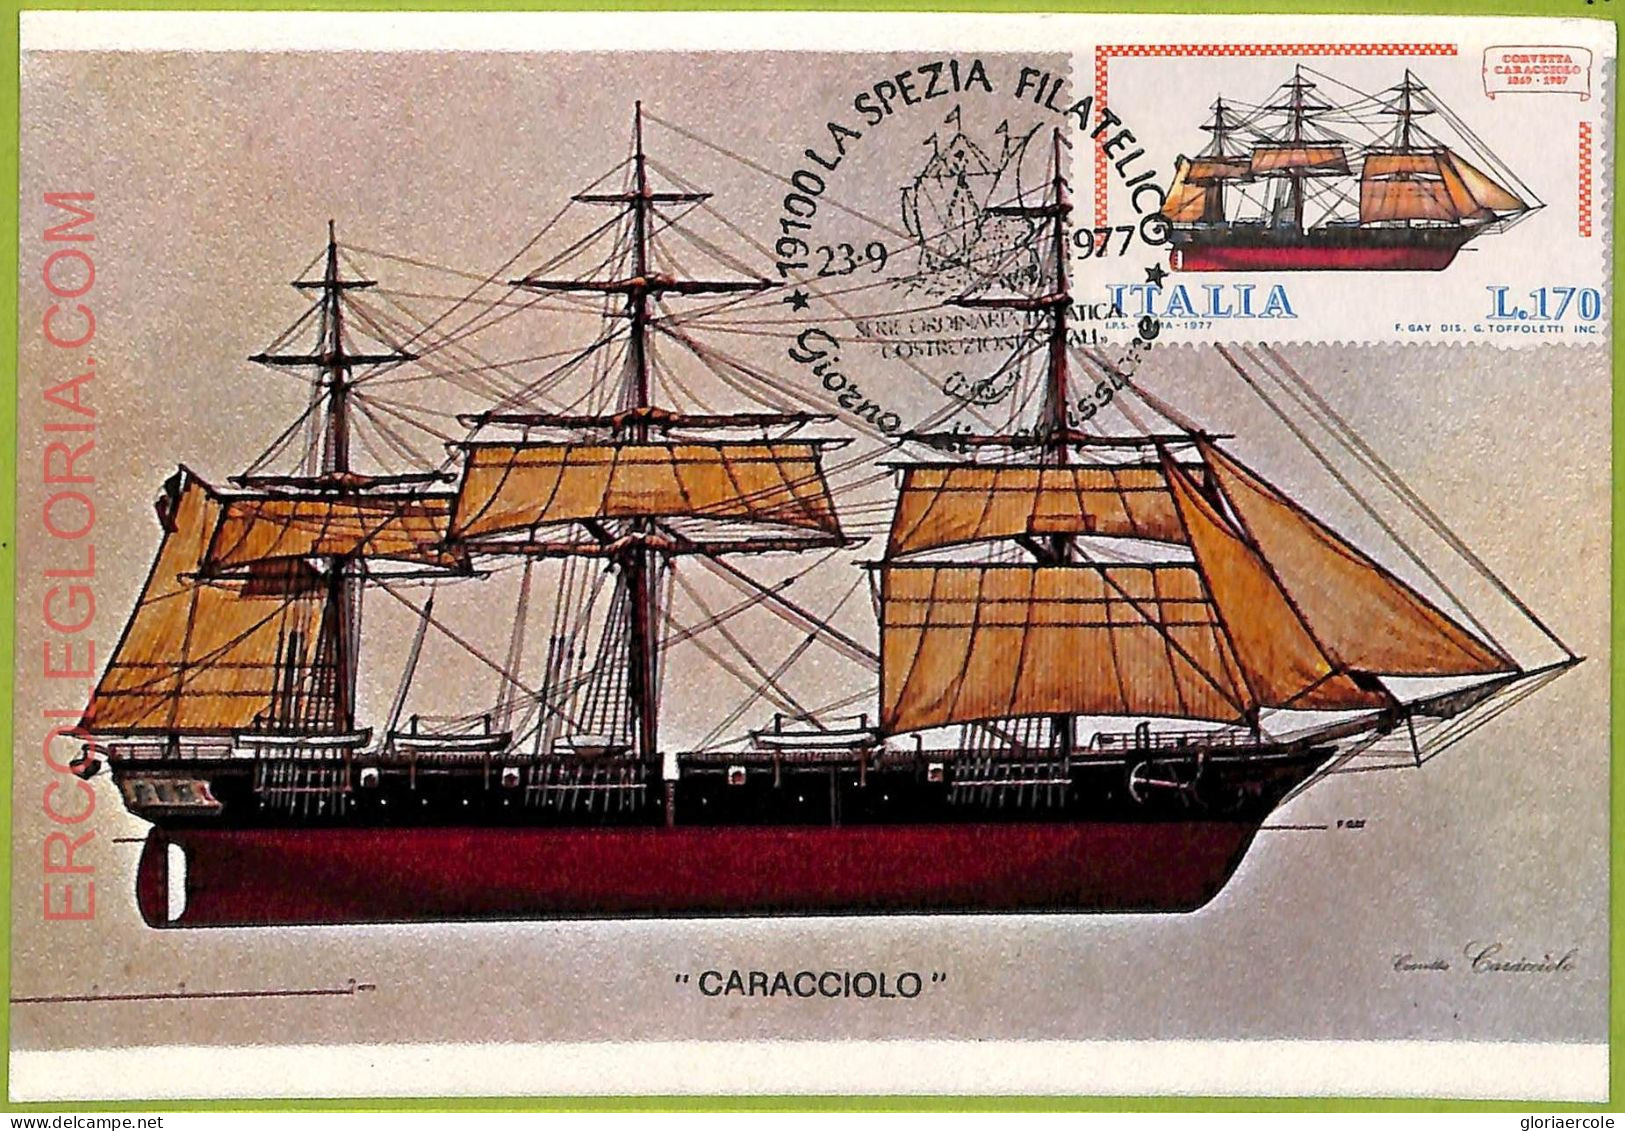 Ad3366 - ITALY - Postal History - MAXIMUM CARD - 1977 - Ships "Caracciolo" - Ships